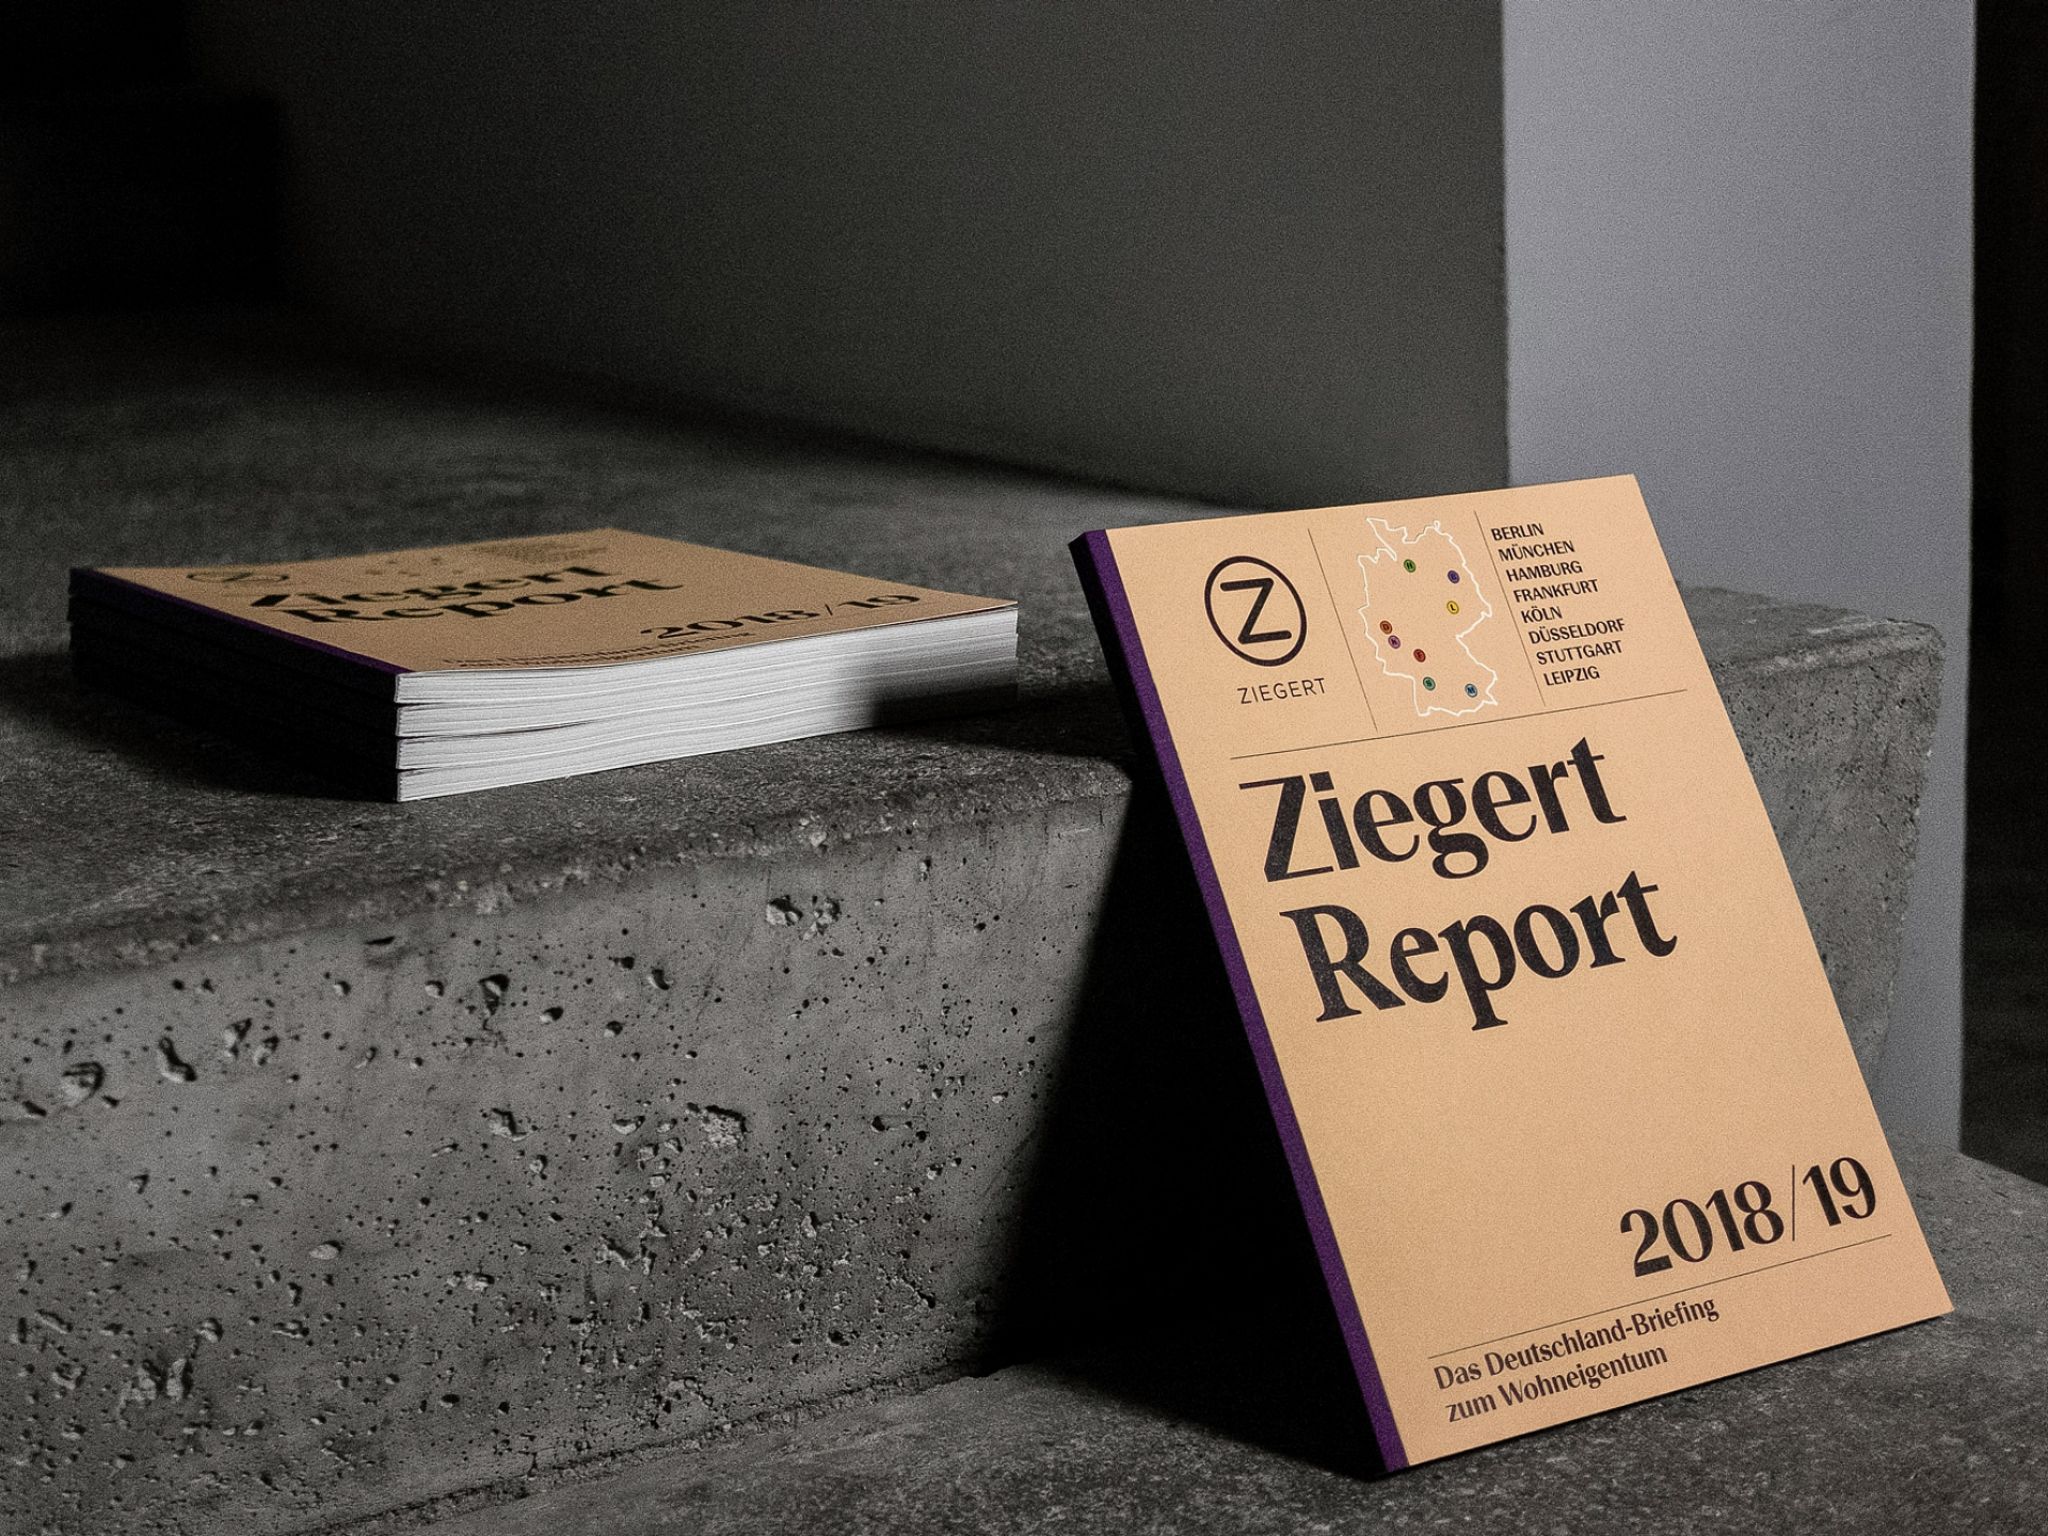 Ziegert Report 2018/19